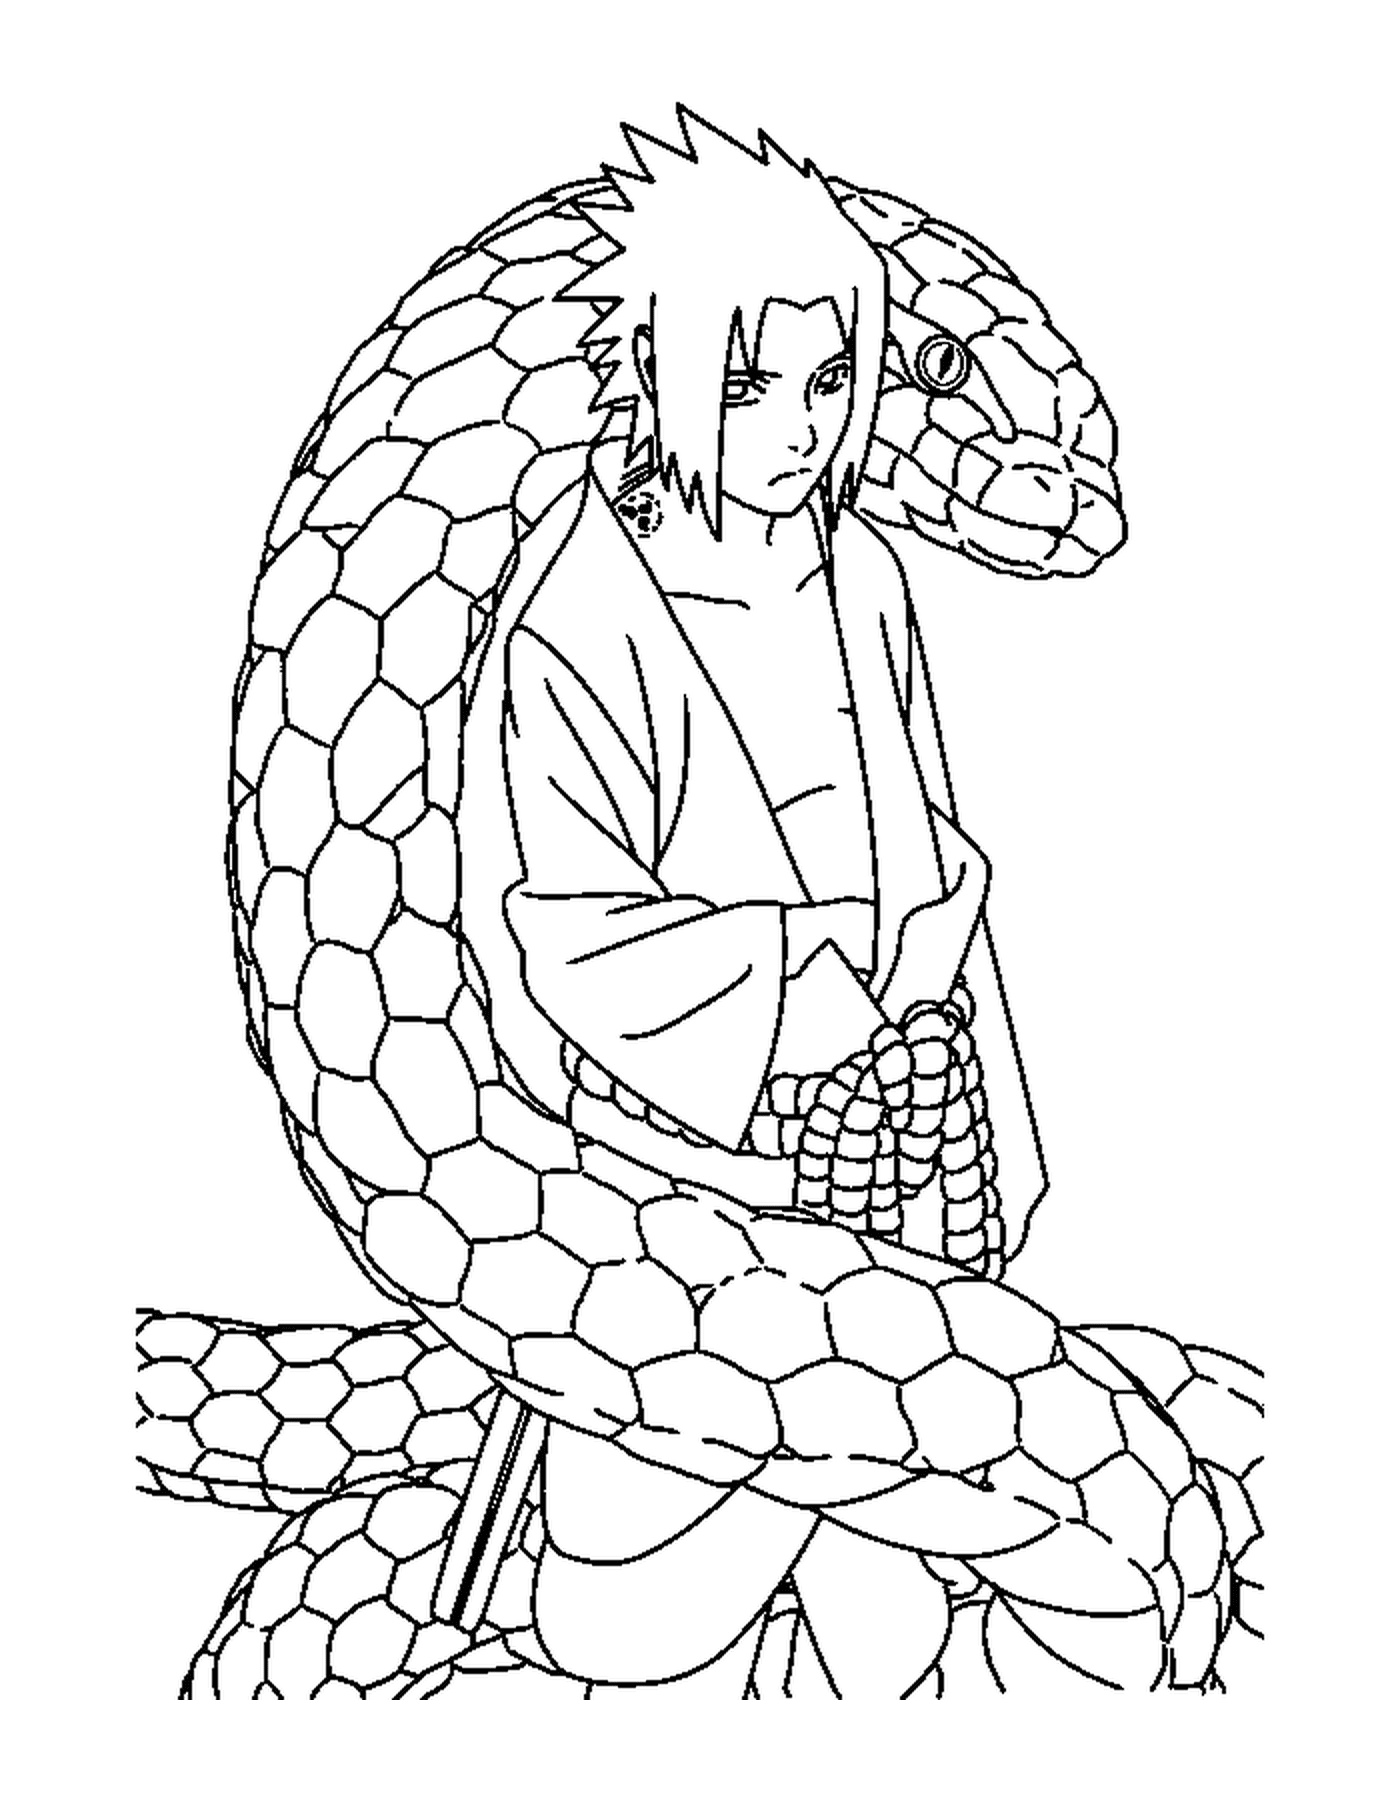  Человек, сидящий на большой змее 